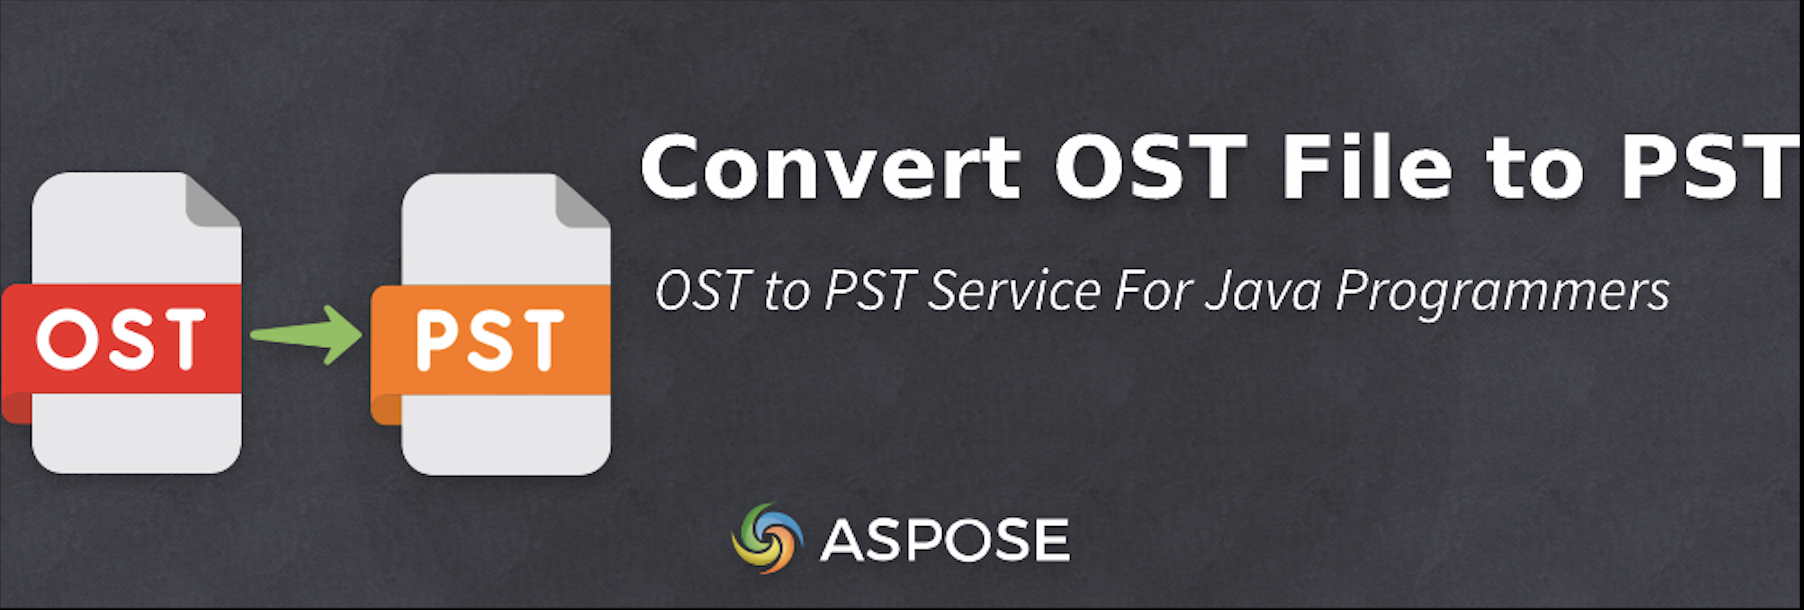 Converta arquivos OST para PST em Java - Conversor gratuito de OST para PST